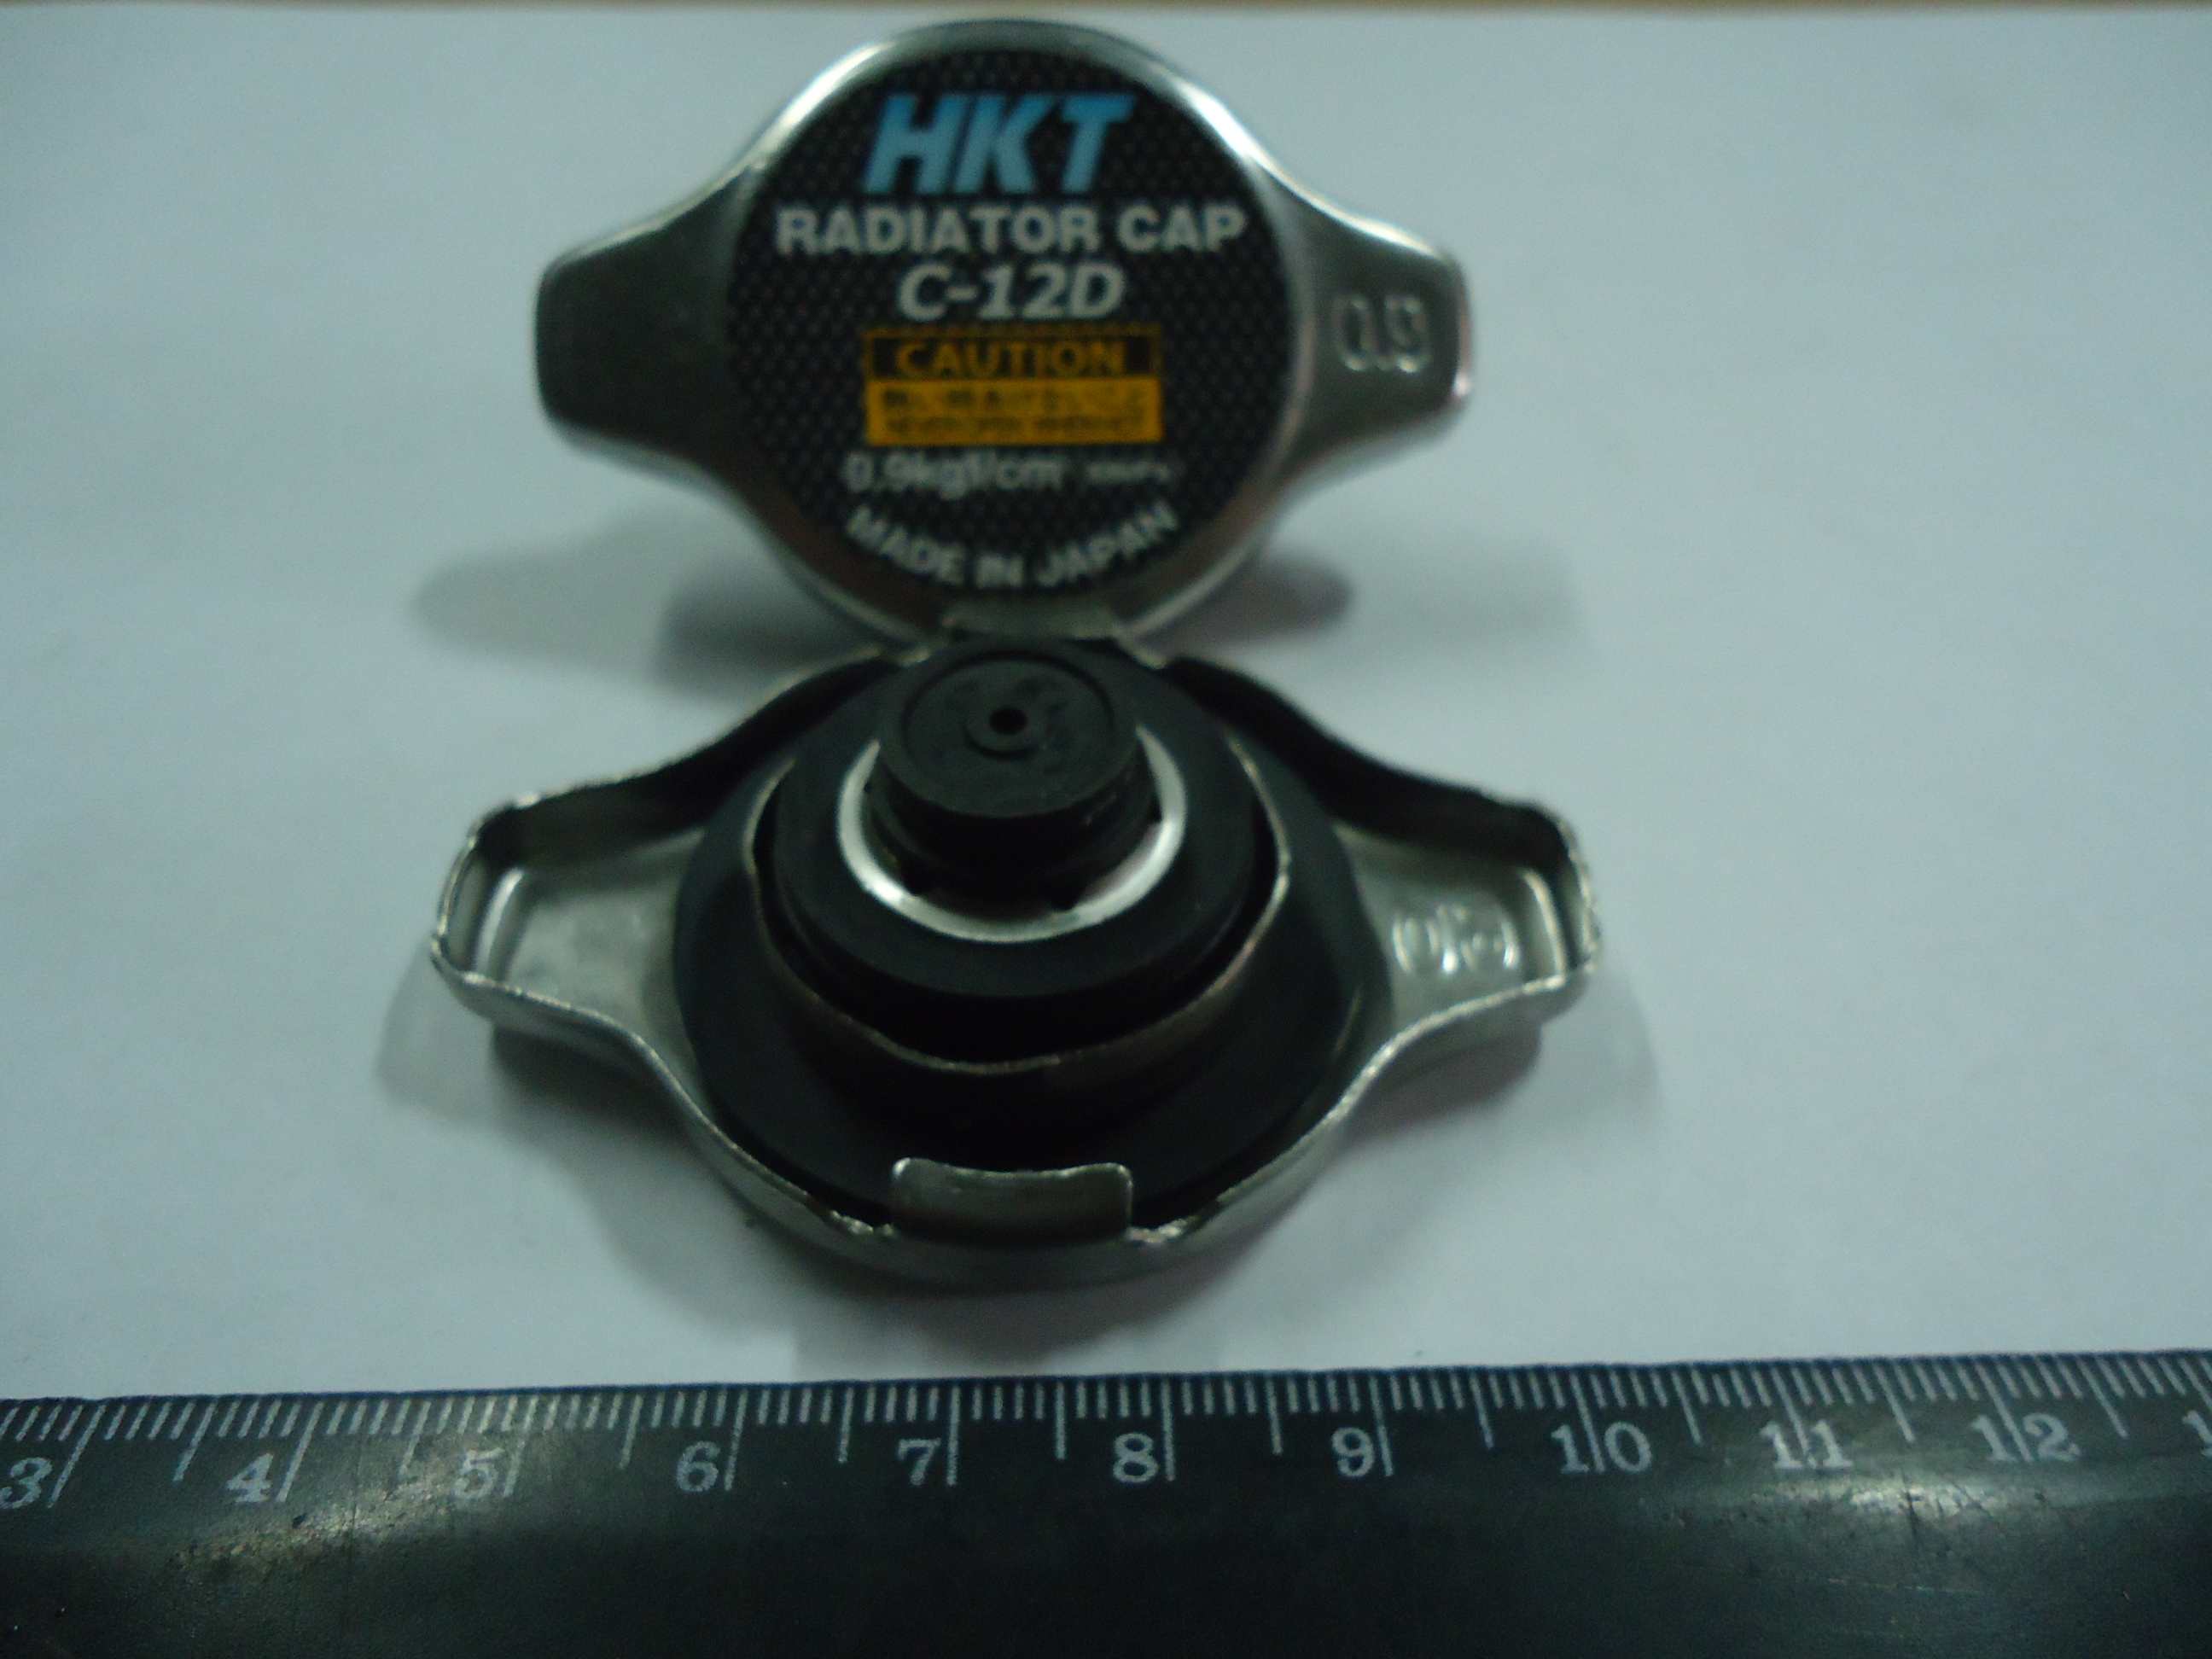 Крышка радиатора HKT C12D 0,9кг/см2